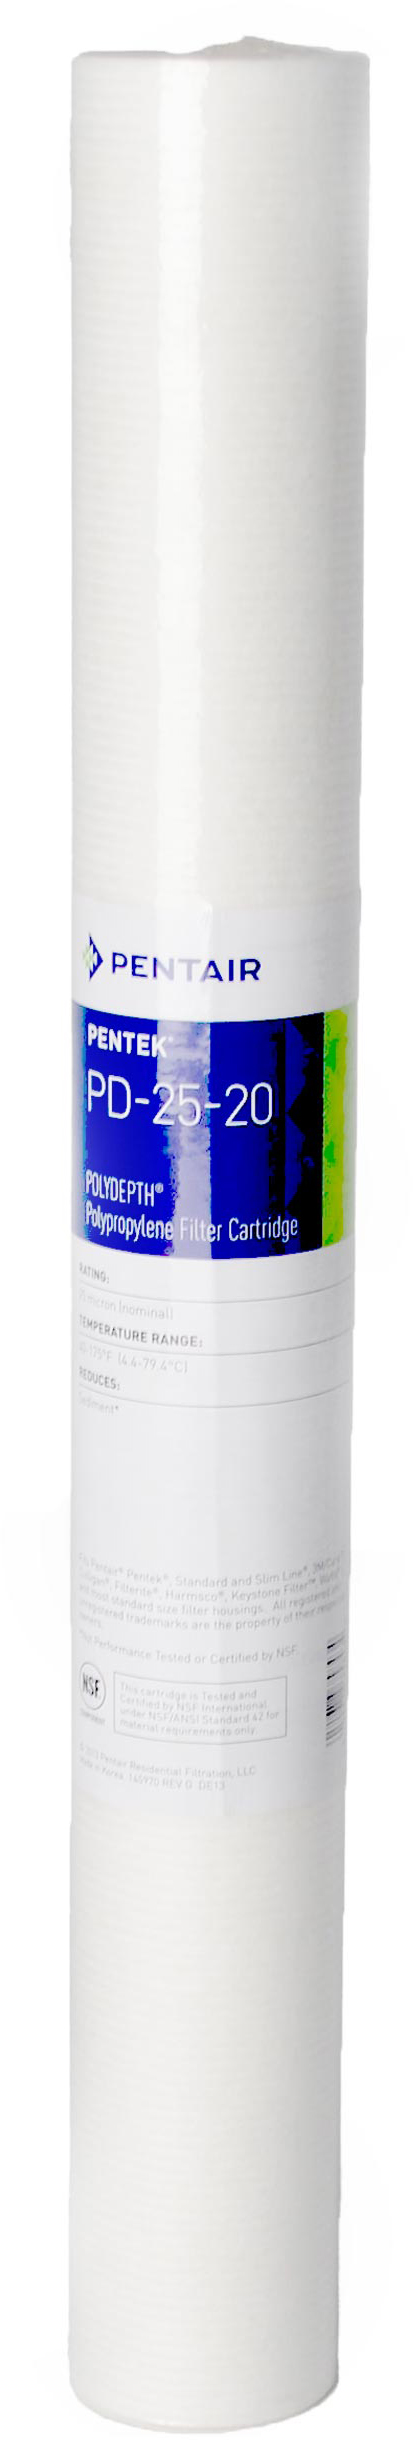 Картридж Pentek от механических загрязнений Pentek PD-5-20 Polydepth (155756-43)